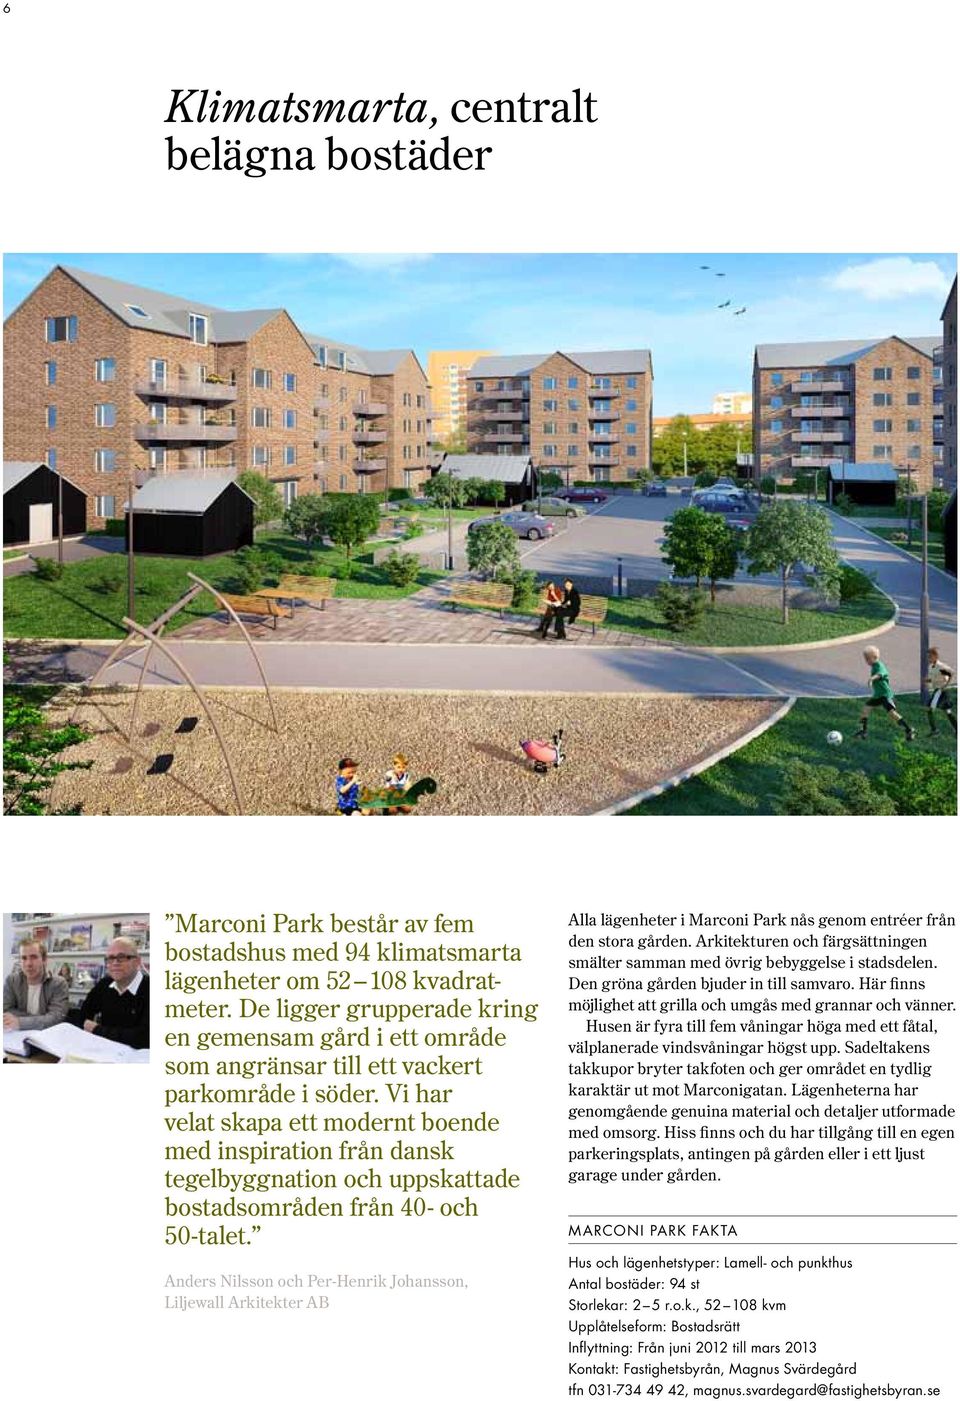 Vi har velat skapa ett modernt boende med inspiration från dansk tegelbyggnation och uppskattade bostadsområden från 40- och 50-talet.